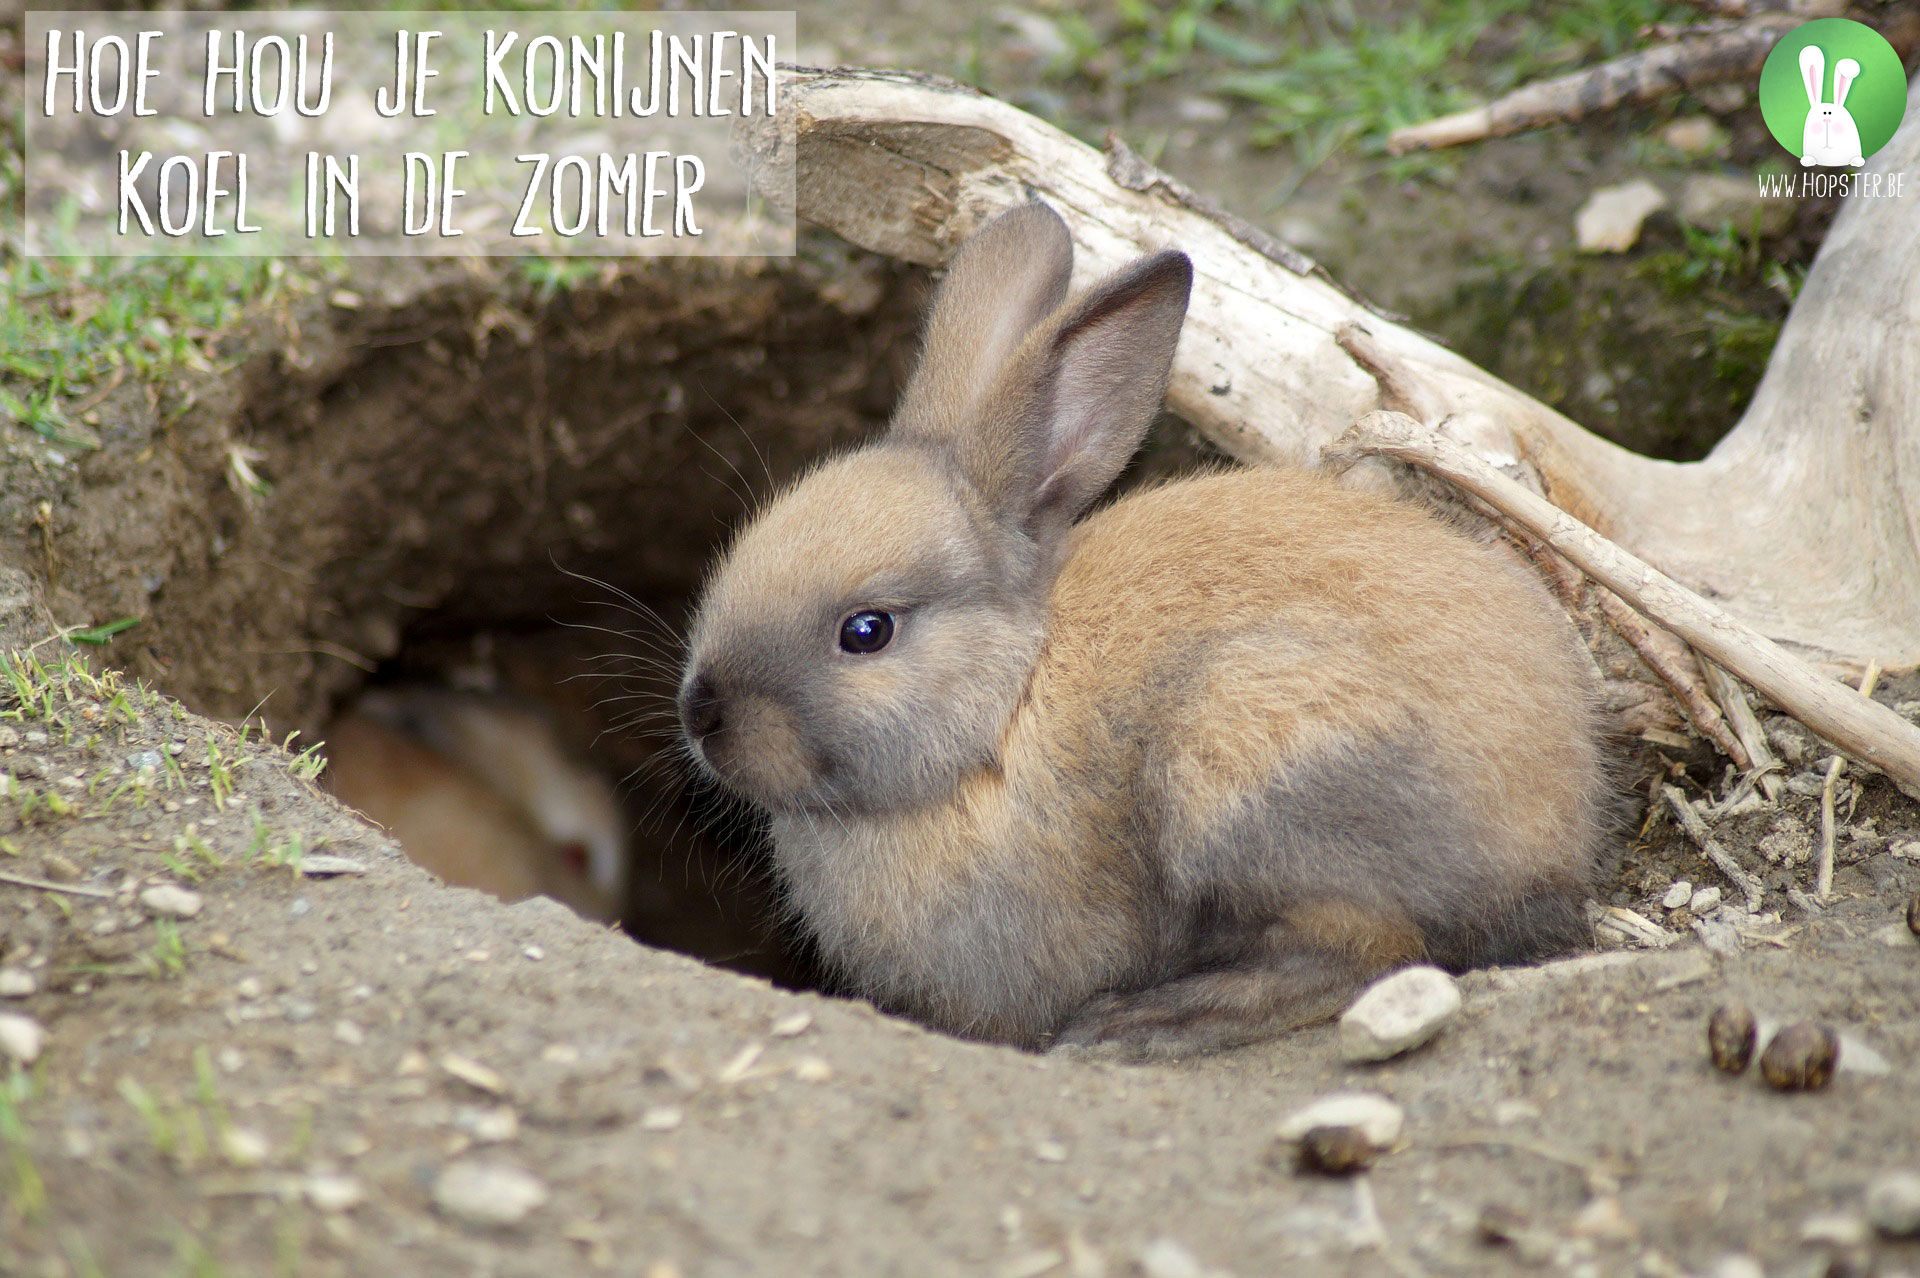 Hou op Voorlopige bevroren Hoe hou je konijnen koel in de zomer | Konijnenadviesbureau Hopster